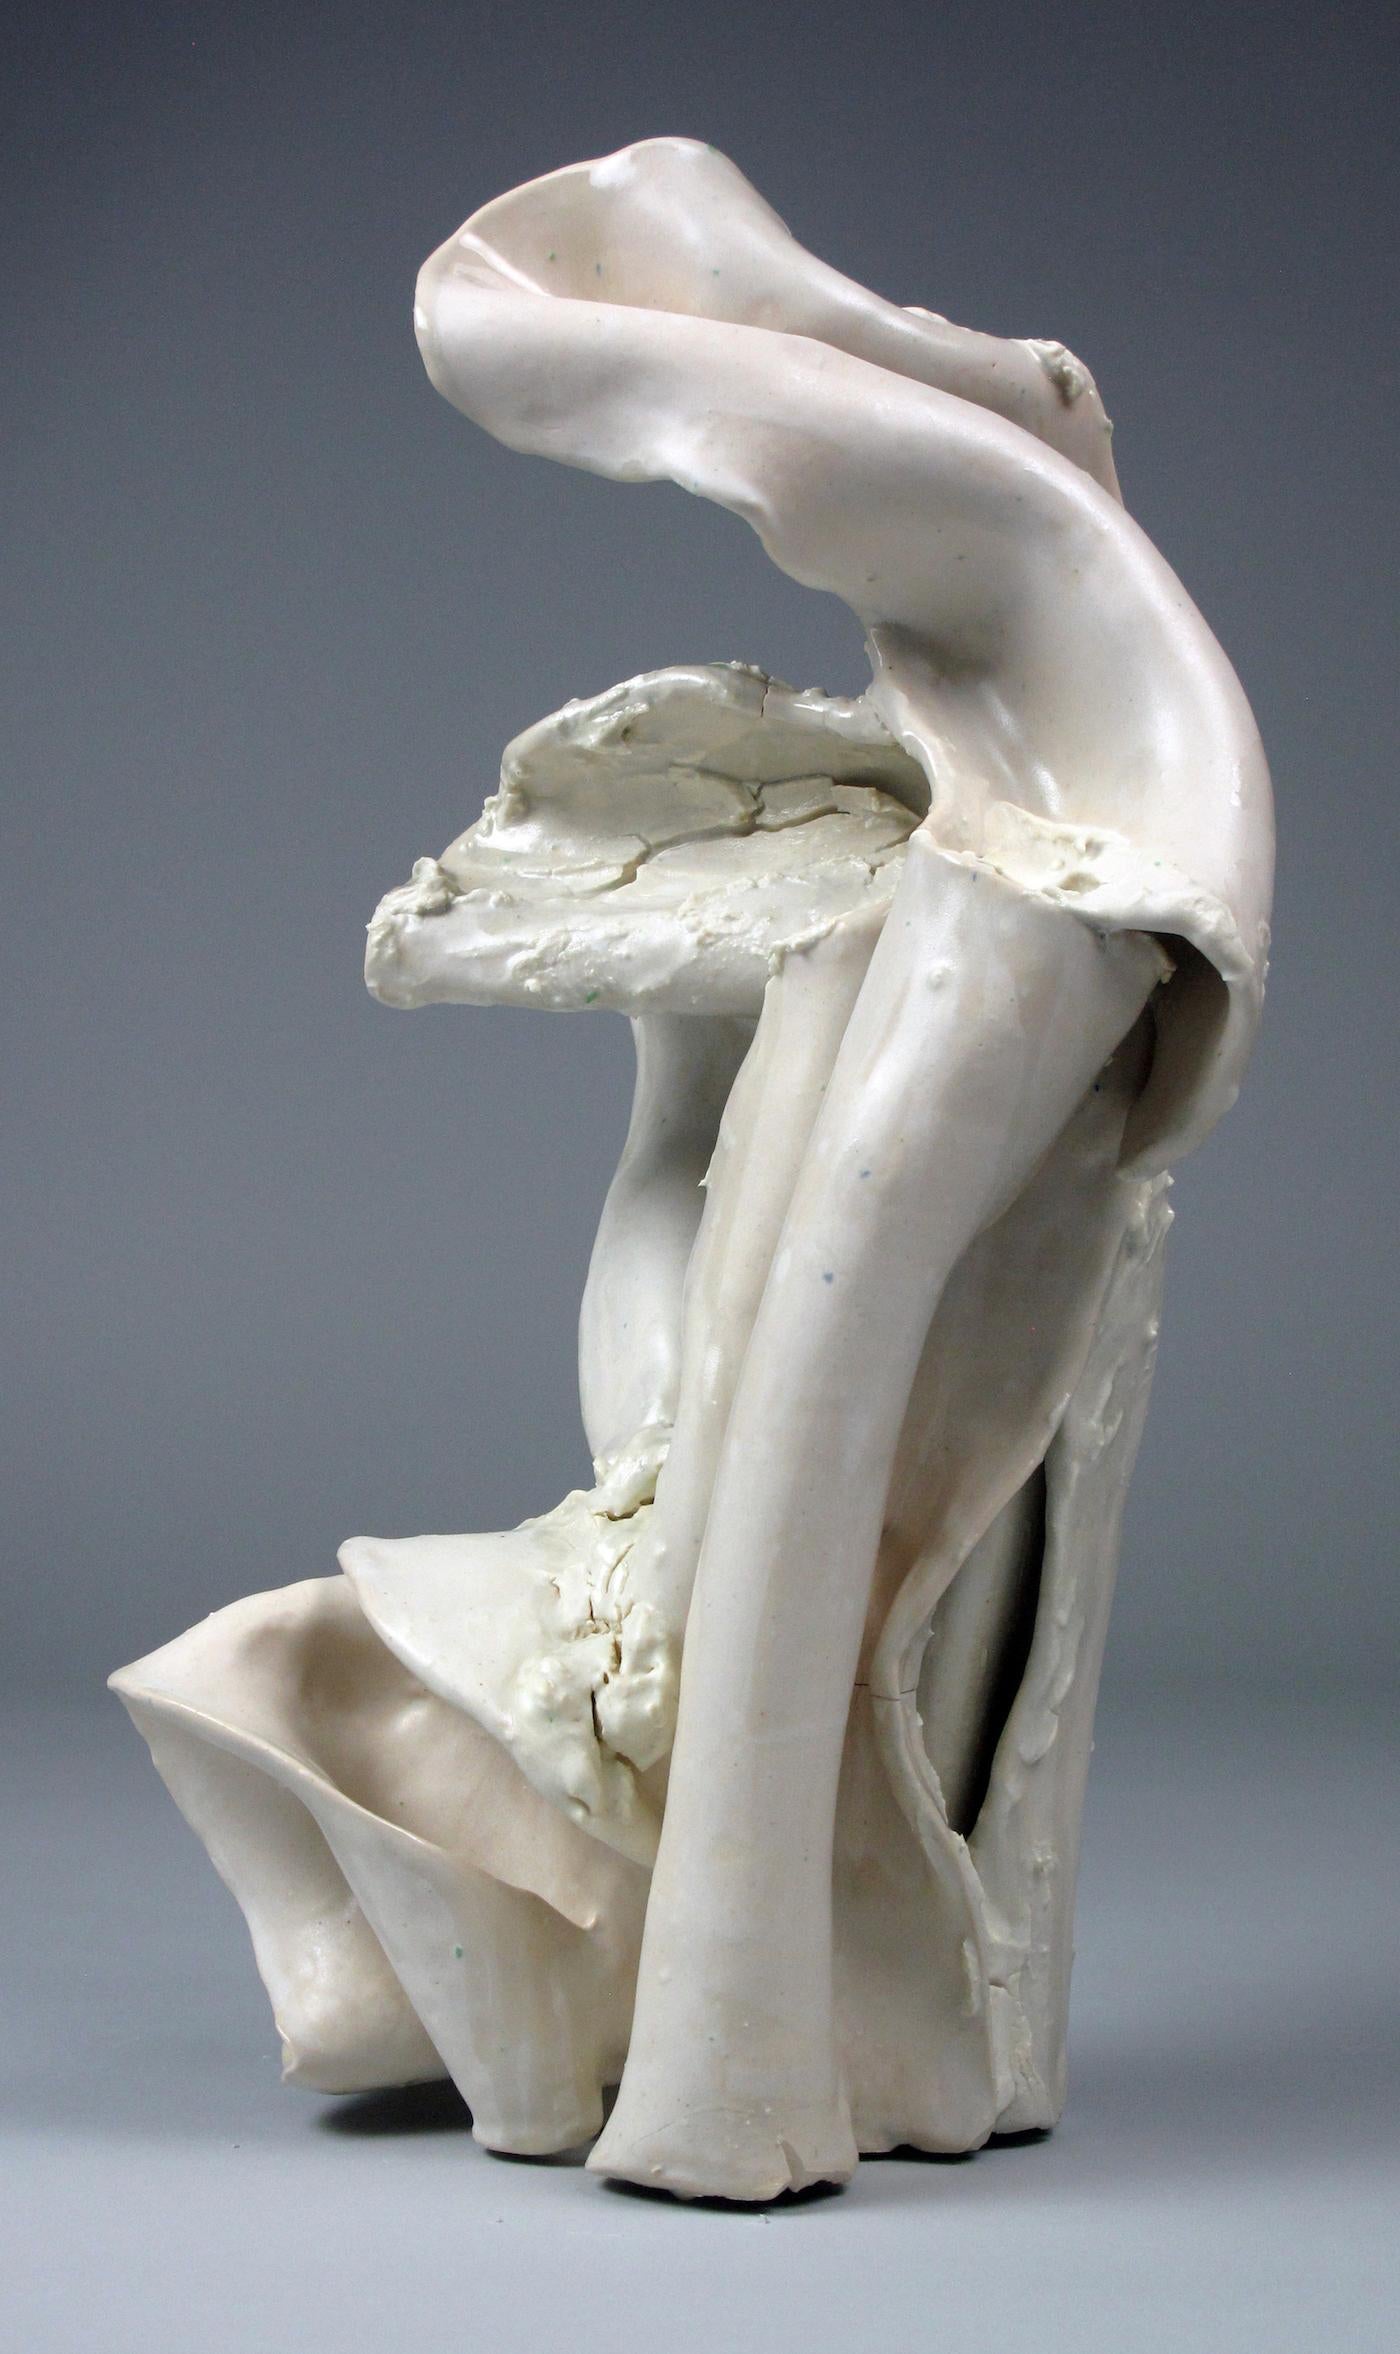 "Bend", gestural, ceramic, sculpture, white, cream, stoneware - Sculpture by Sara Fine-Wilson